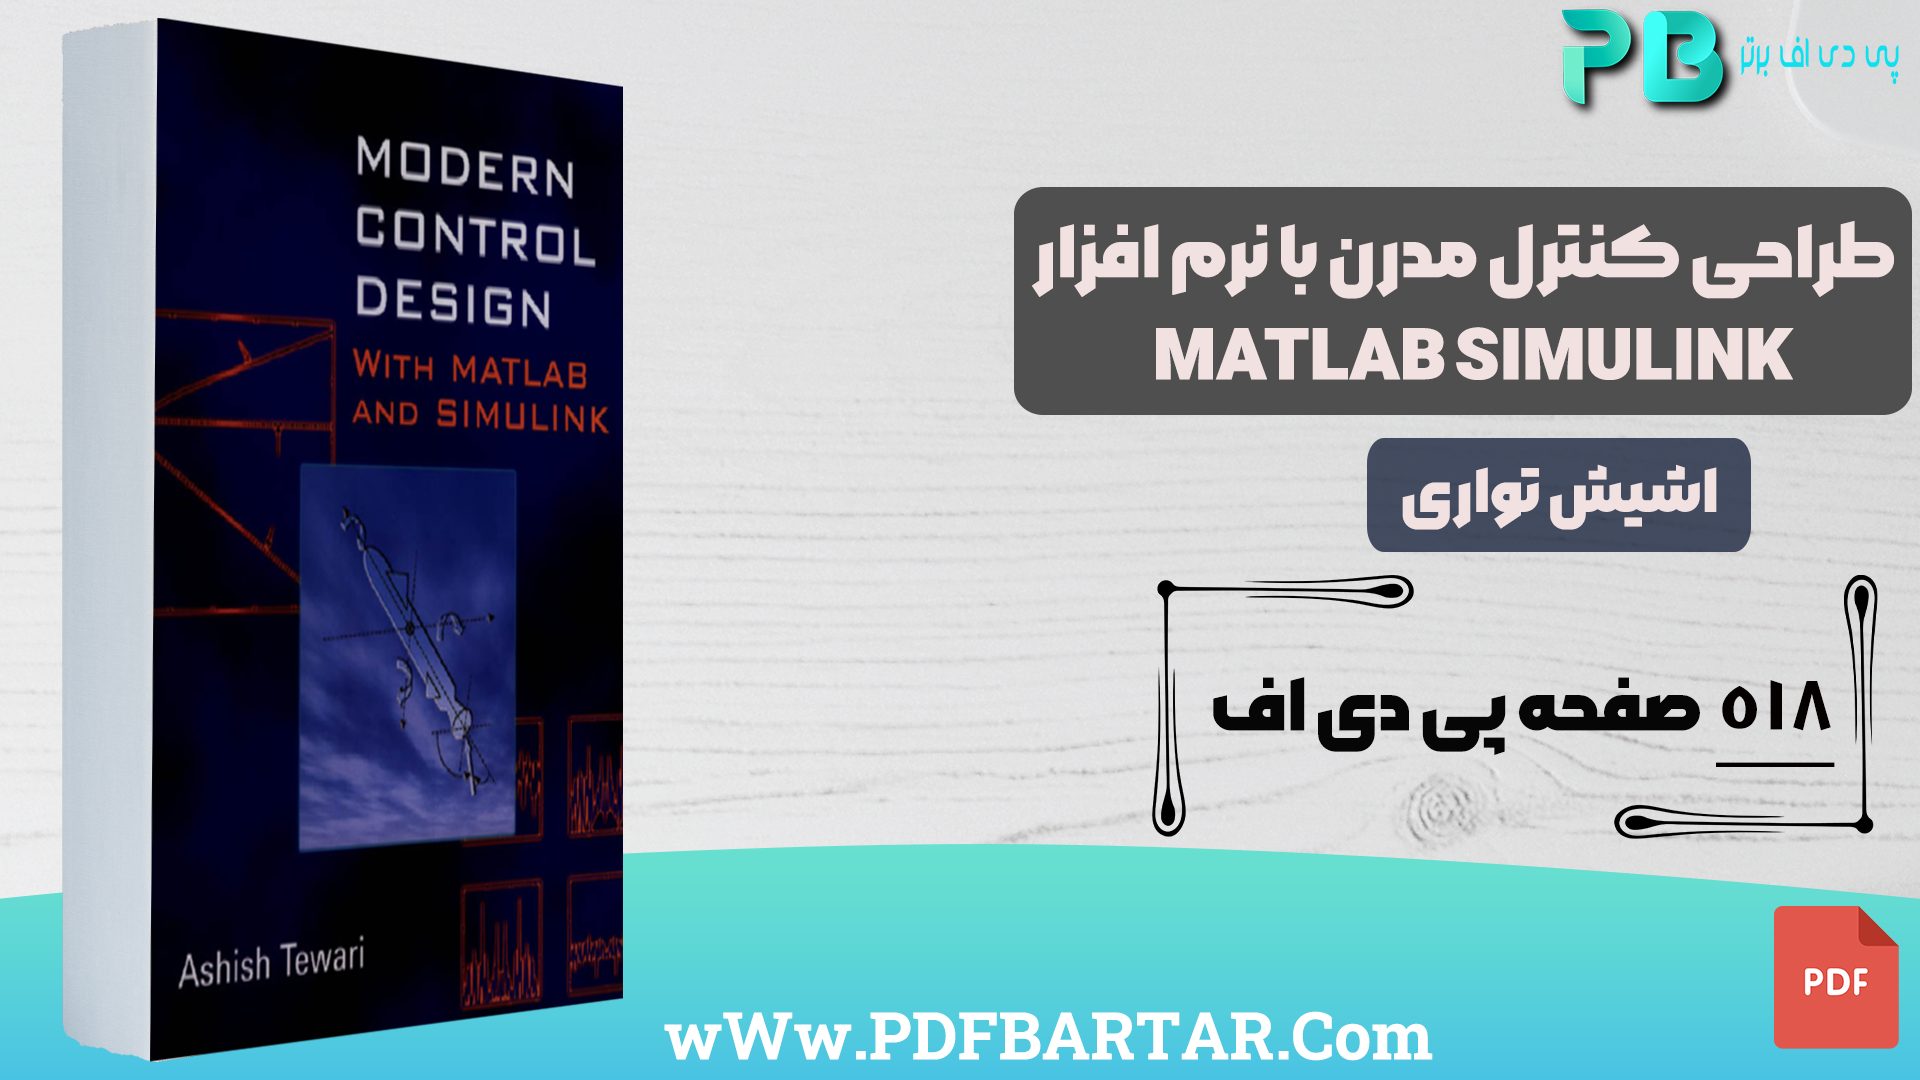 دانلود پی دی اف کتاب طراحی کنترل مدرن با نرم افزار MATLAB SIMULINK اشیش تواری PDF- پی دی اف برتر